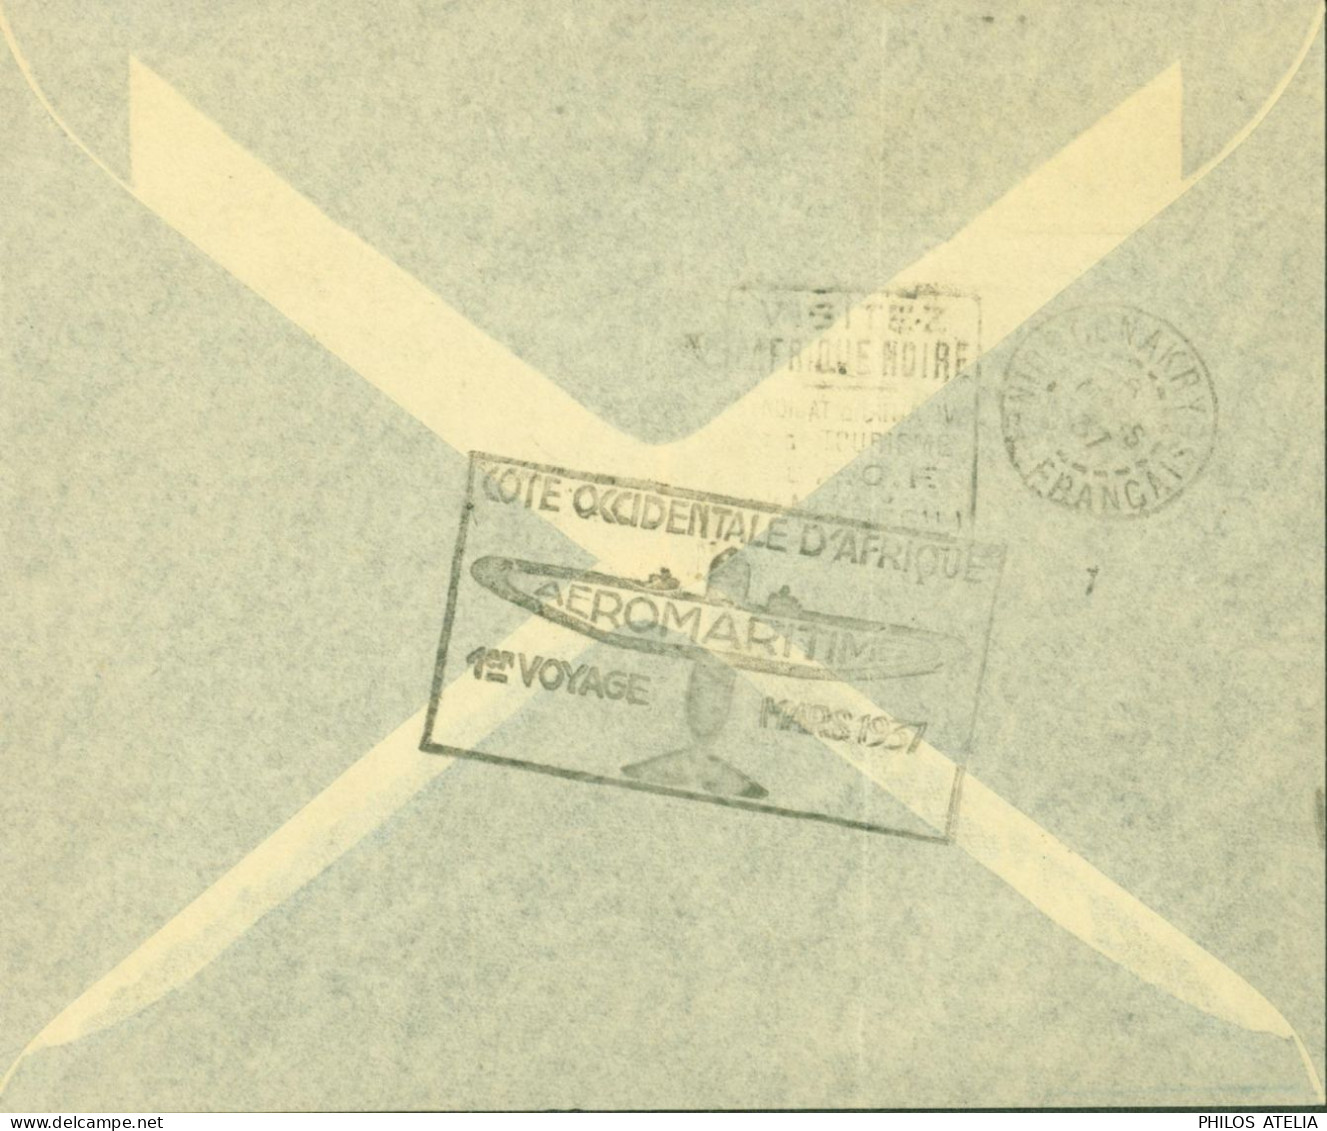 Dahomey YT N°99 101 72 Par Avion Cachet Cote Occidentale D'Afrique Aéromaritime 1er Voyage Mars 1937 CAD Cotonou 4 3 37 - Briefe U. Dokumente